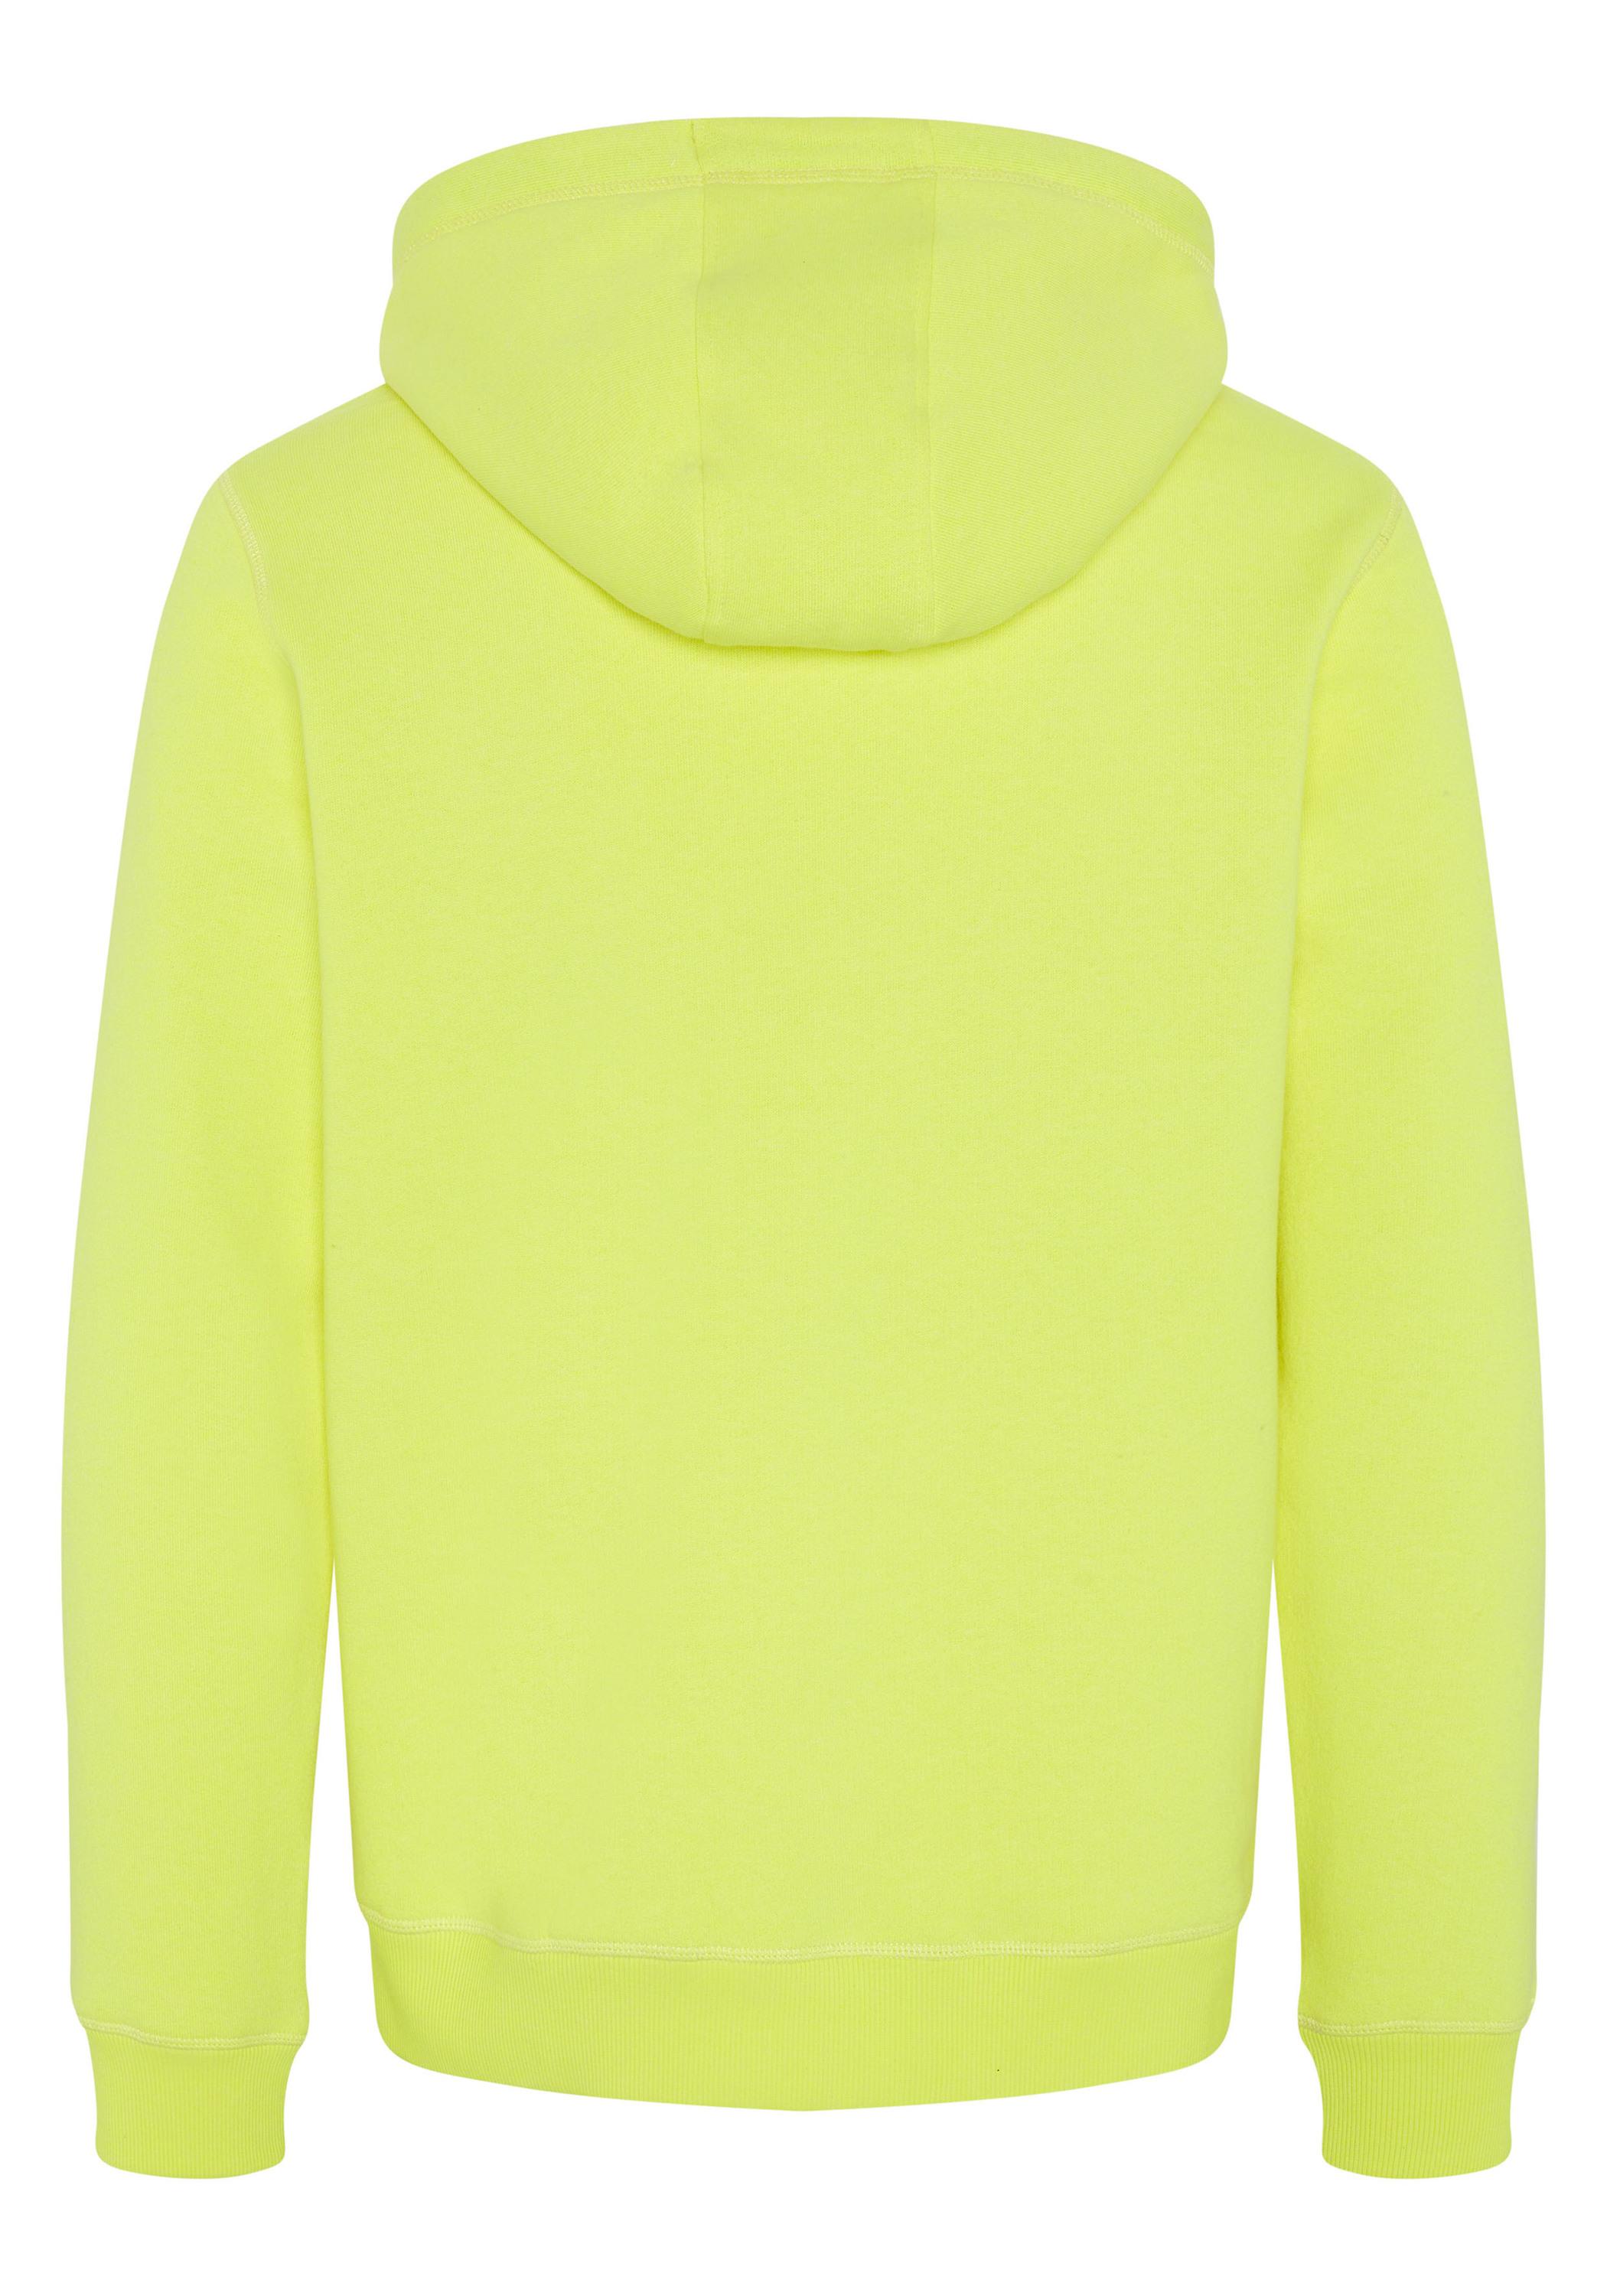 Sweatshirt Online Shop von im SportScheck Kapuzensweatshirt Herren Safety kaufen Yellow Chiemsee